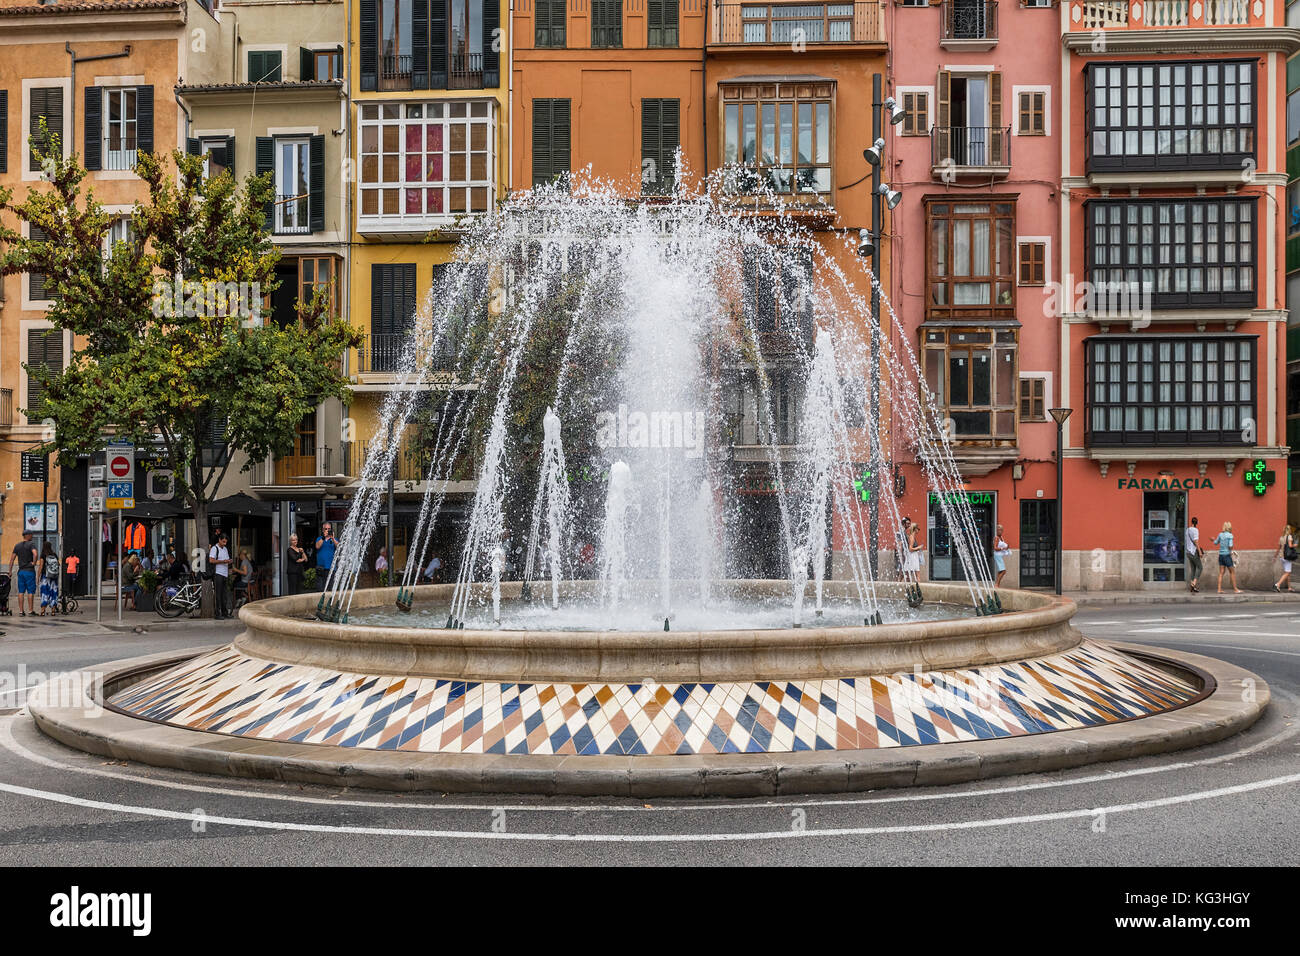 Fontaine à la Plaza de la Reina, Palma de Mallorca, Majorque, Îles Baléares, Espagne. Banque D'Images